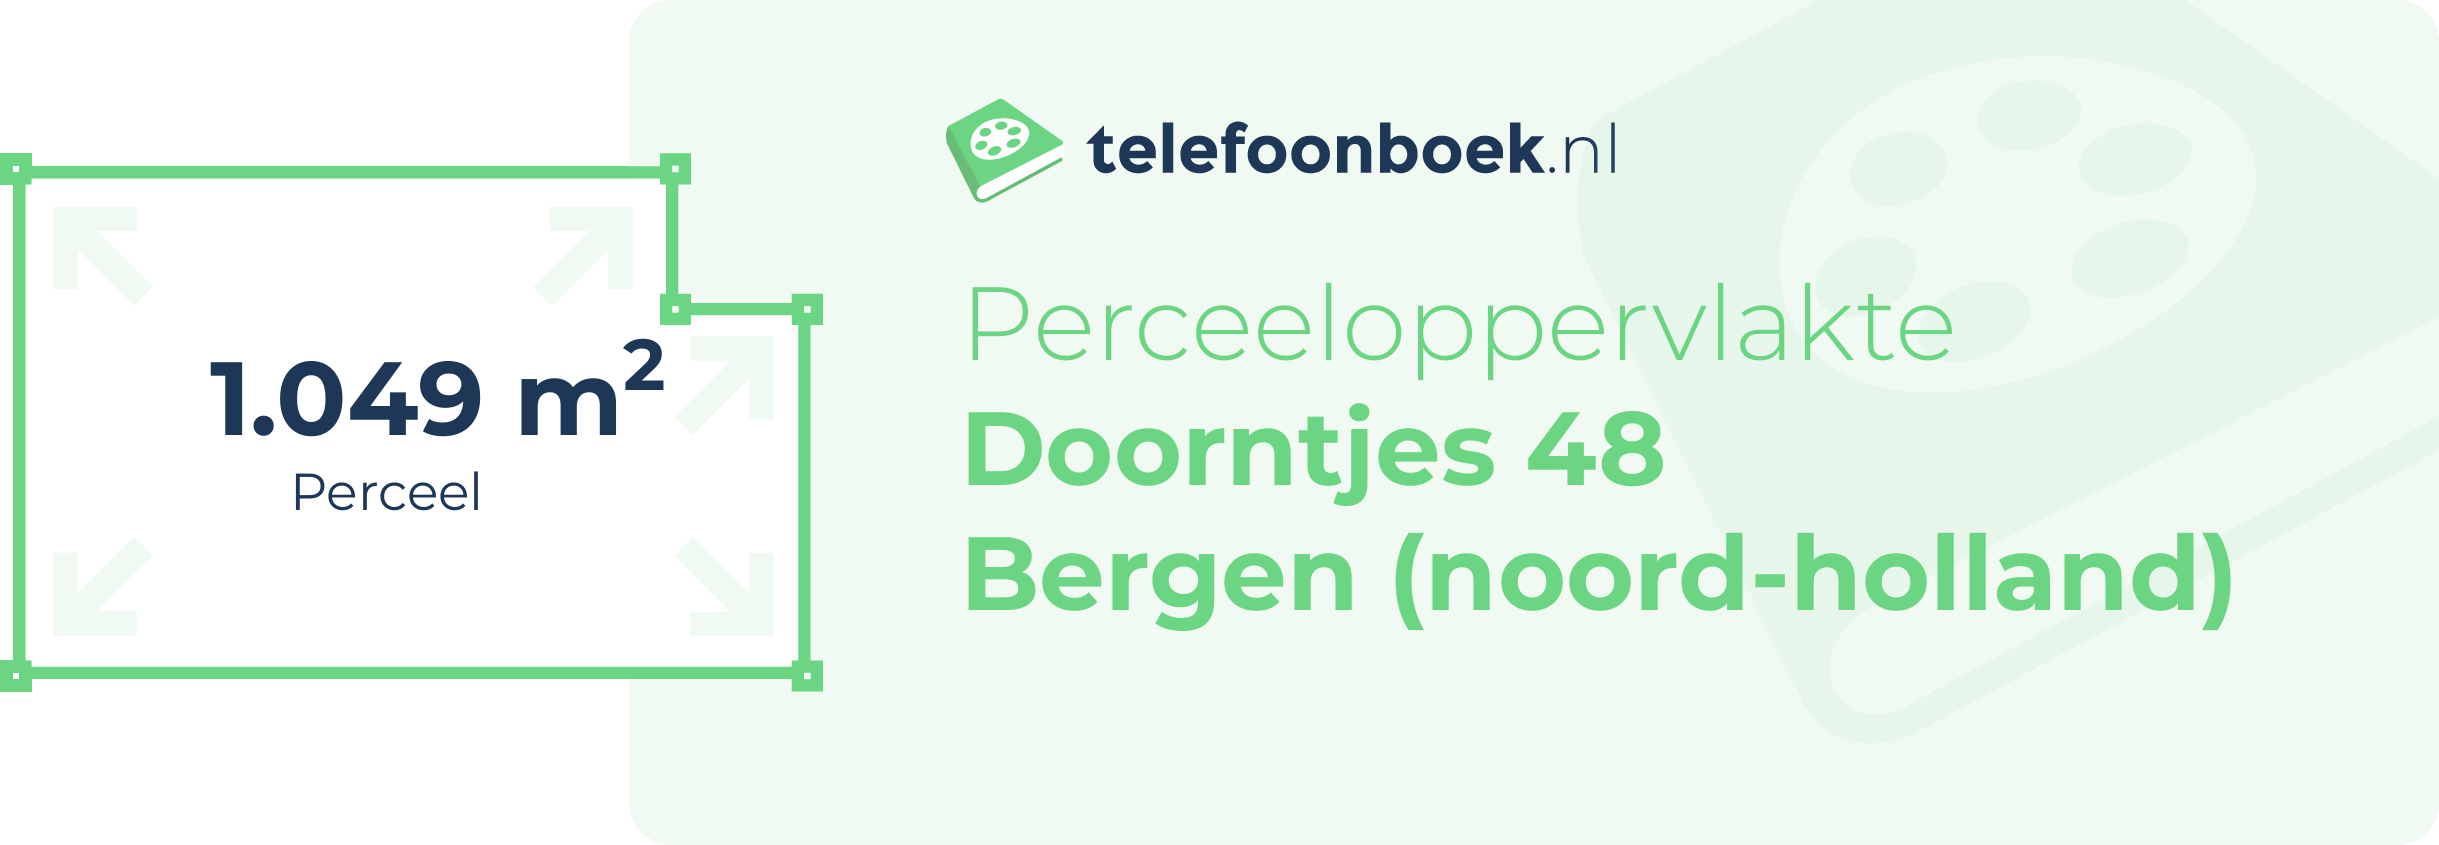 Perceeloppervlakte Doorntjes 48 Bergen (Noord-Holland)